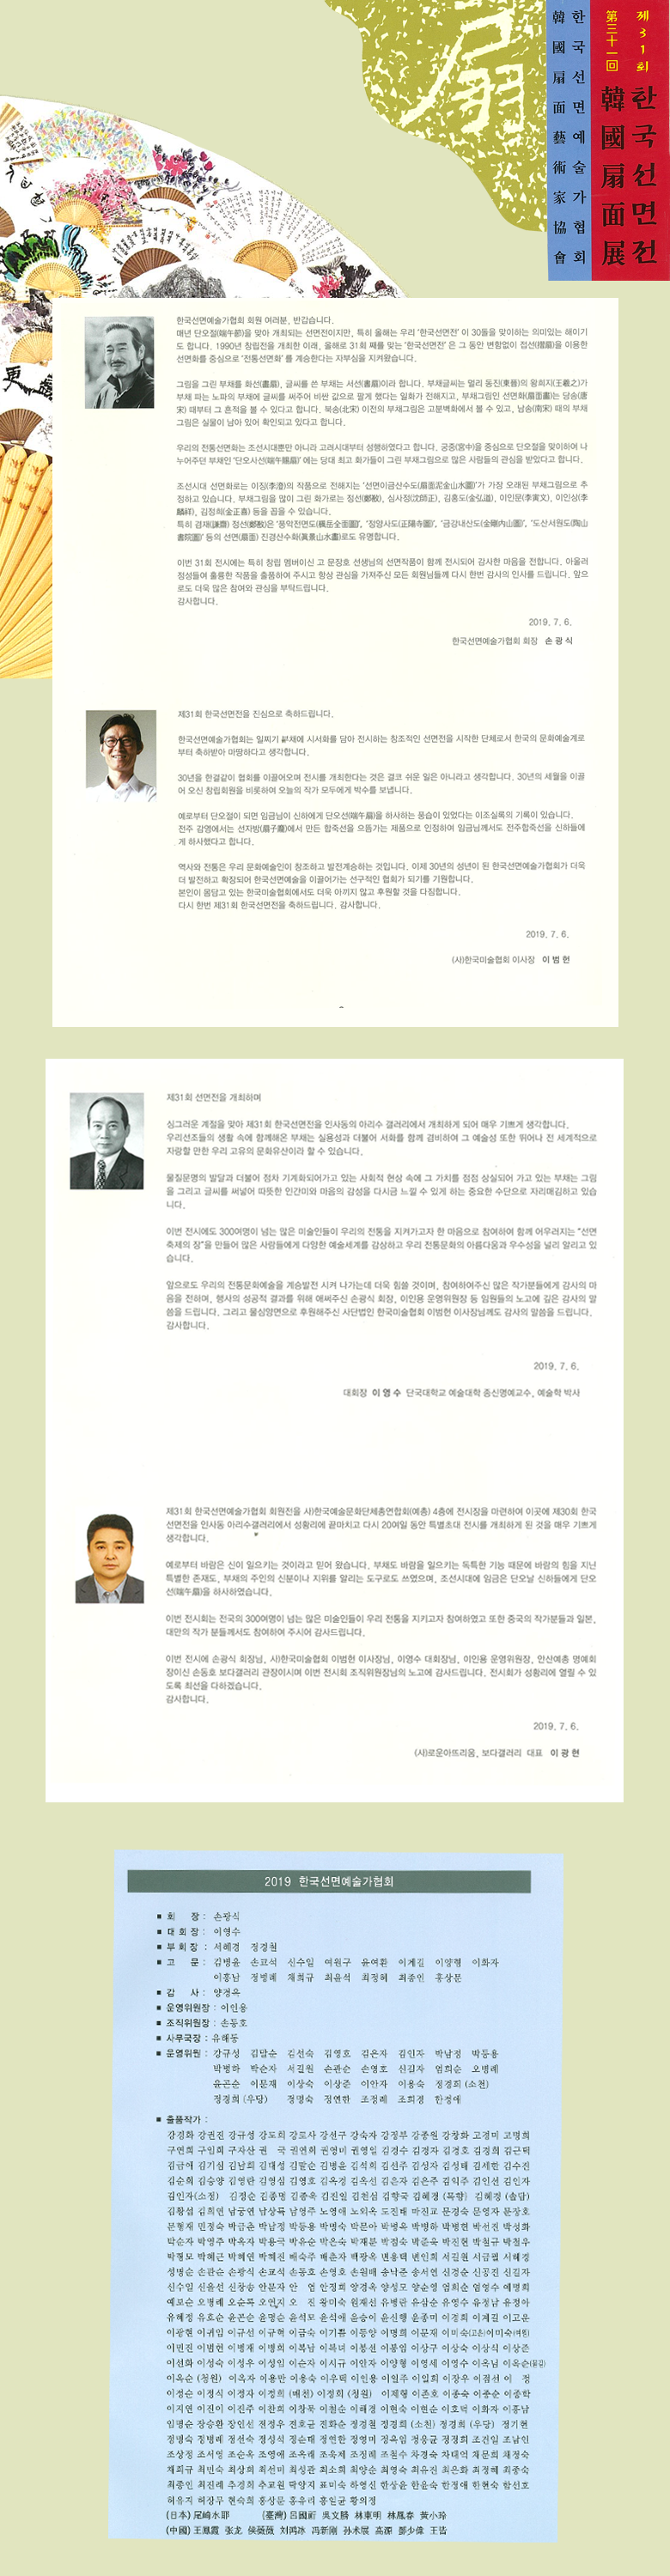 한국 선면전 상세페이지_팜플렛기반.png